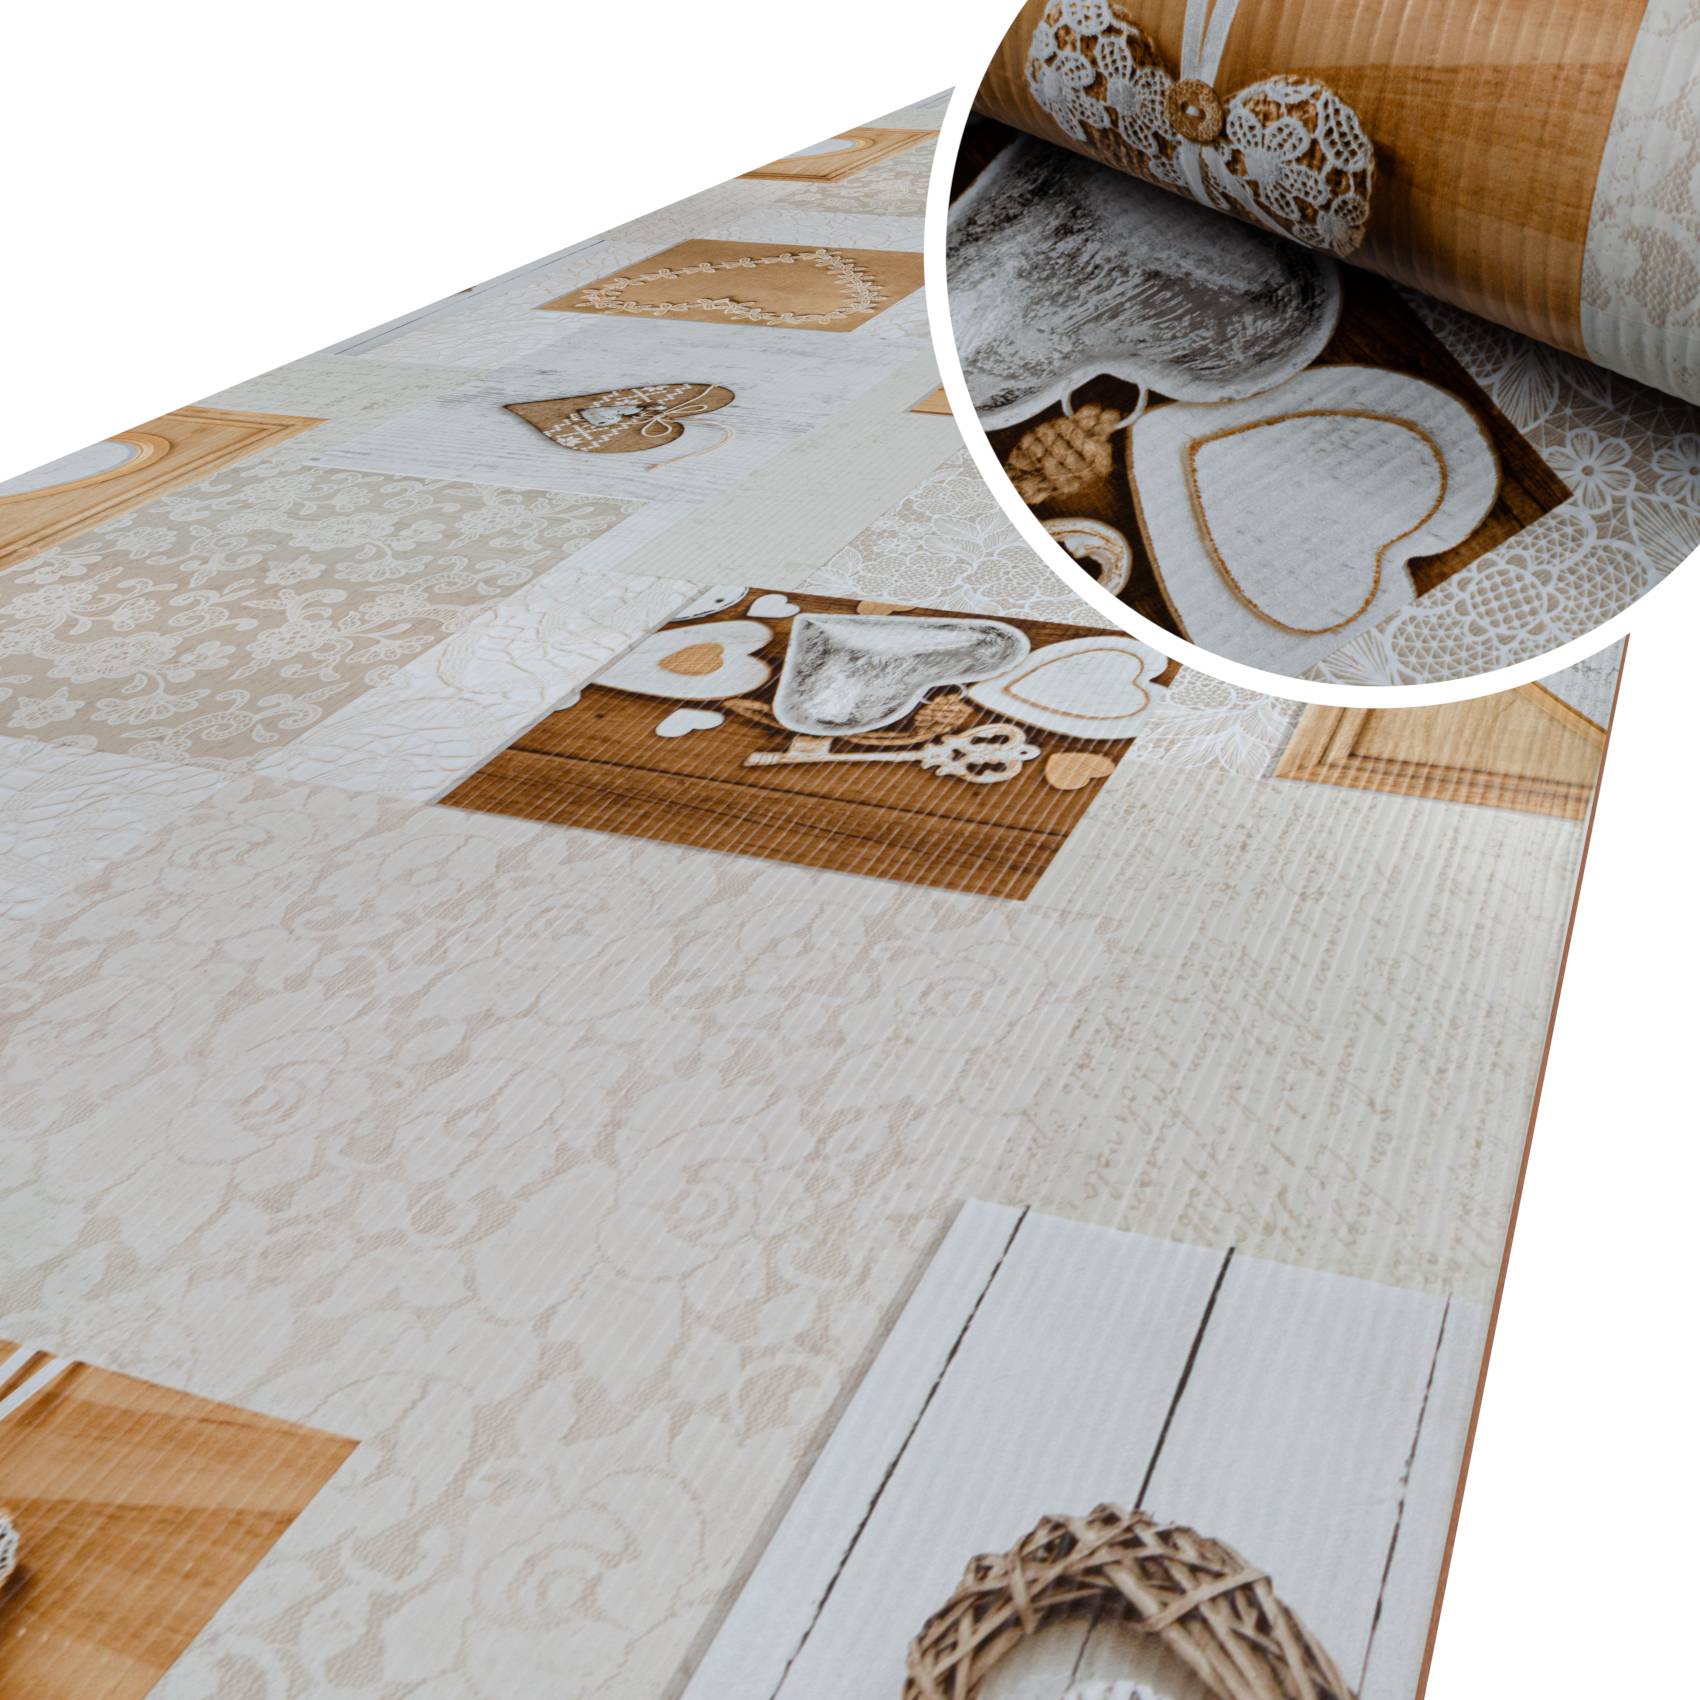 Küchenläufer Küchenteppich Motivdruck Herzen Holz Teppichläufer Flur Teppich Läufer rutschfest 100x52cm